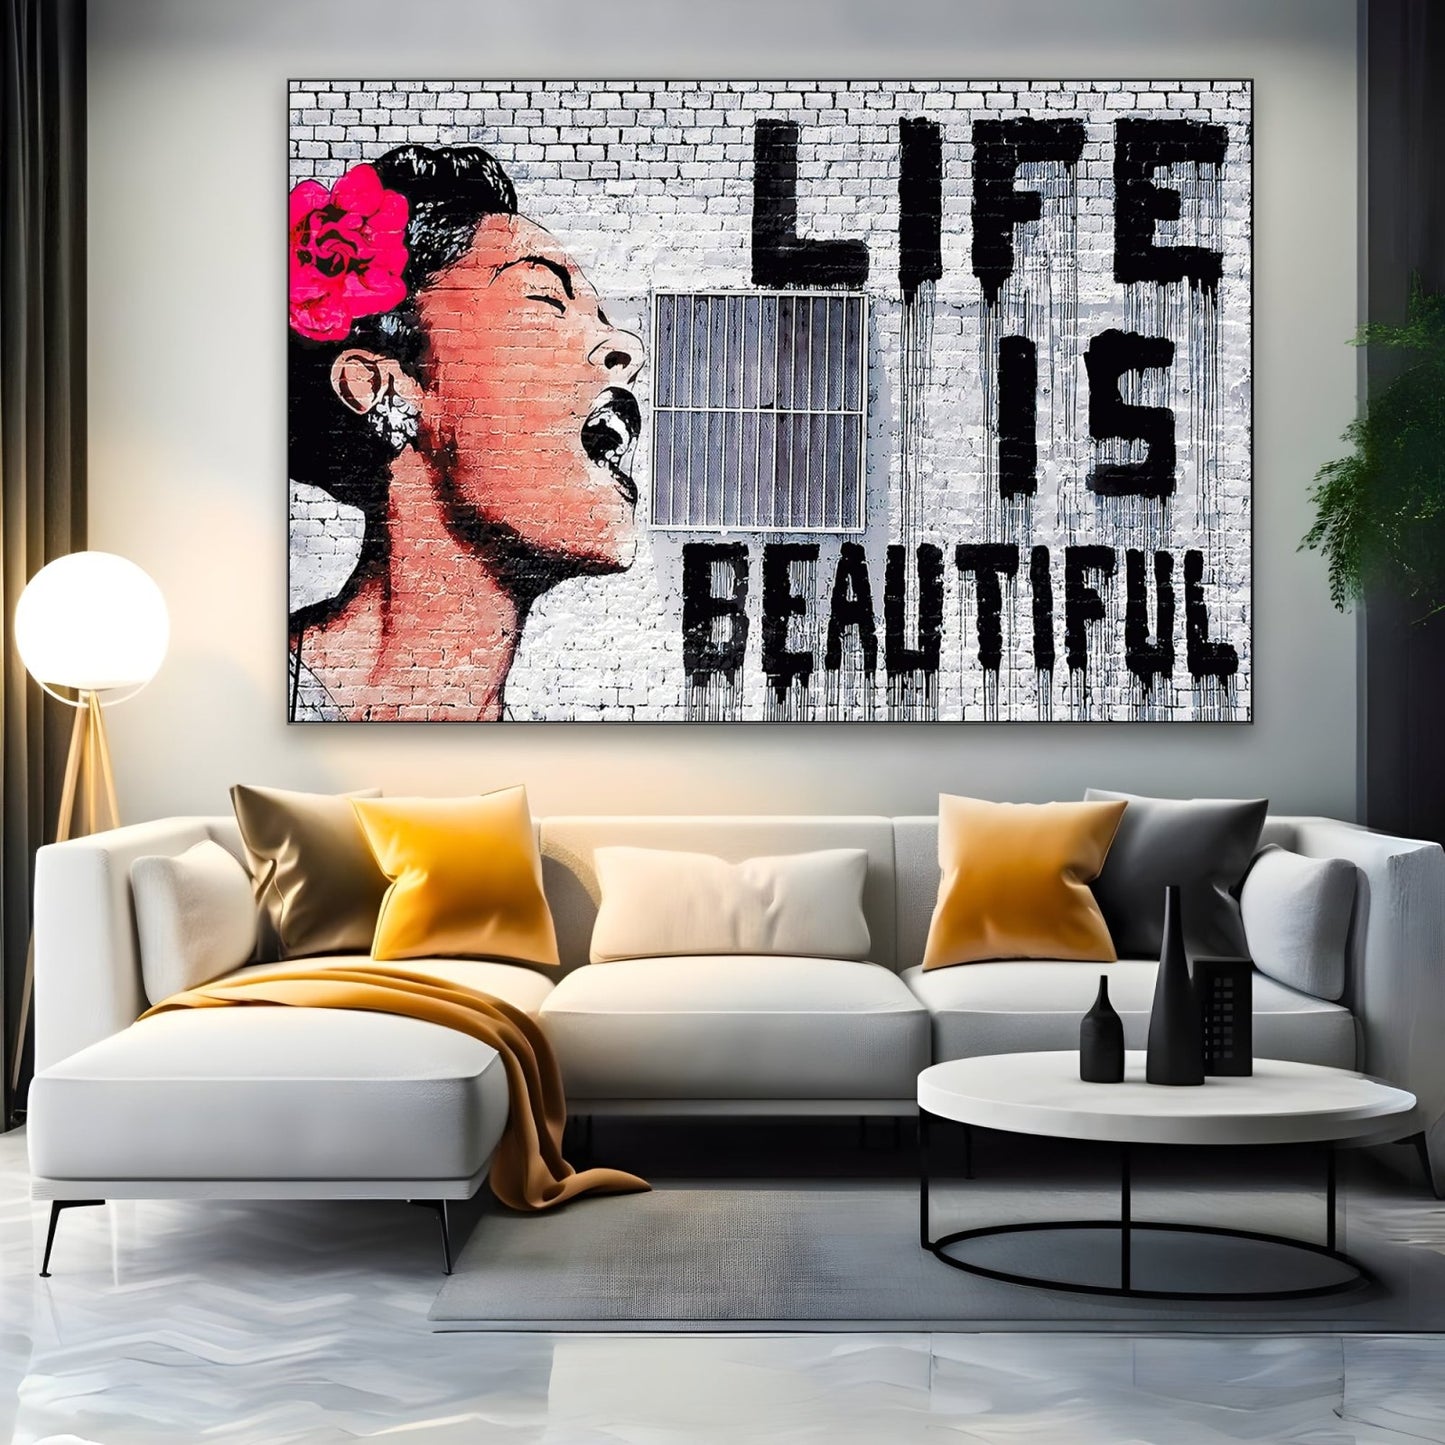 Życie jest piękne, Banksy